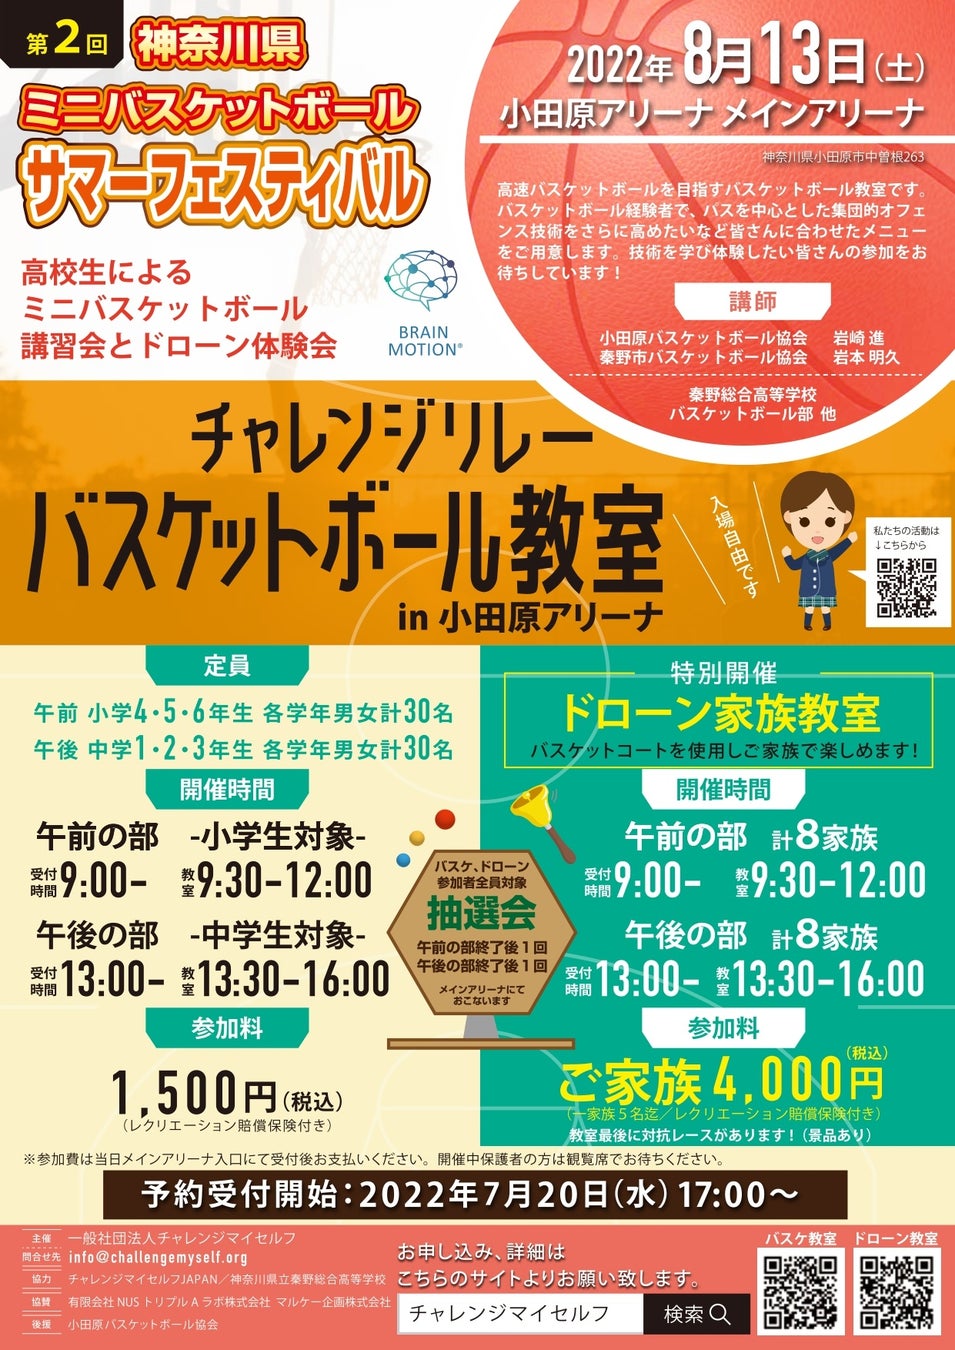 スペシャライズドストアの大阪エリア５店舗が「ライドでつなぐスタンプラリー in 大阪」を開催